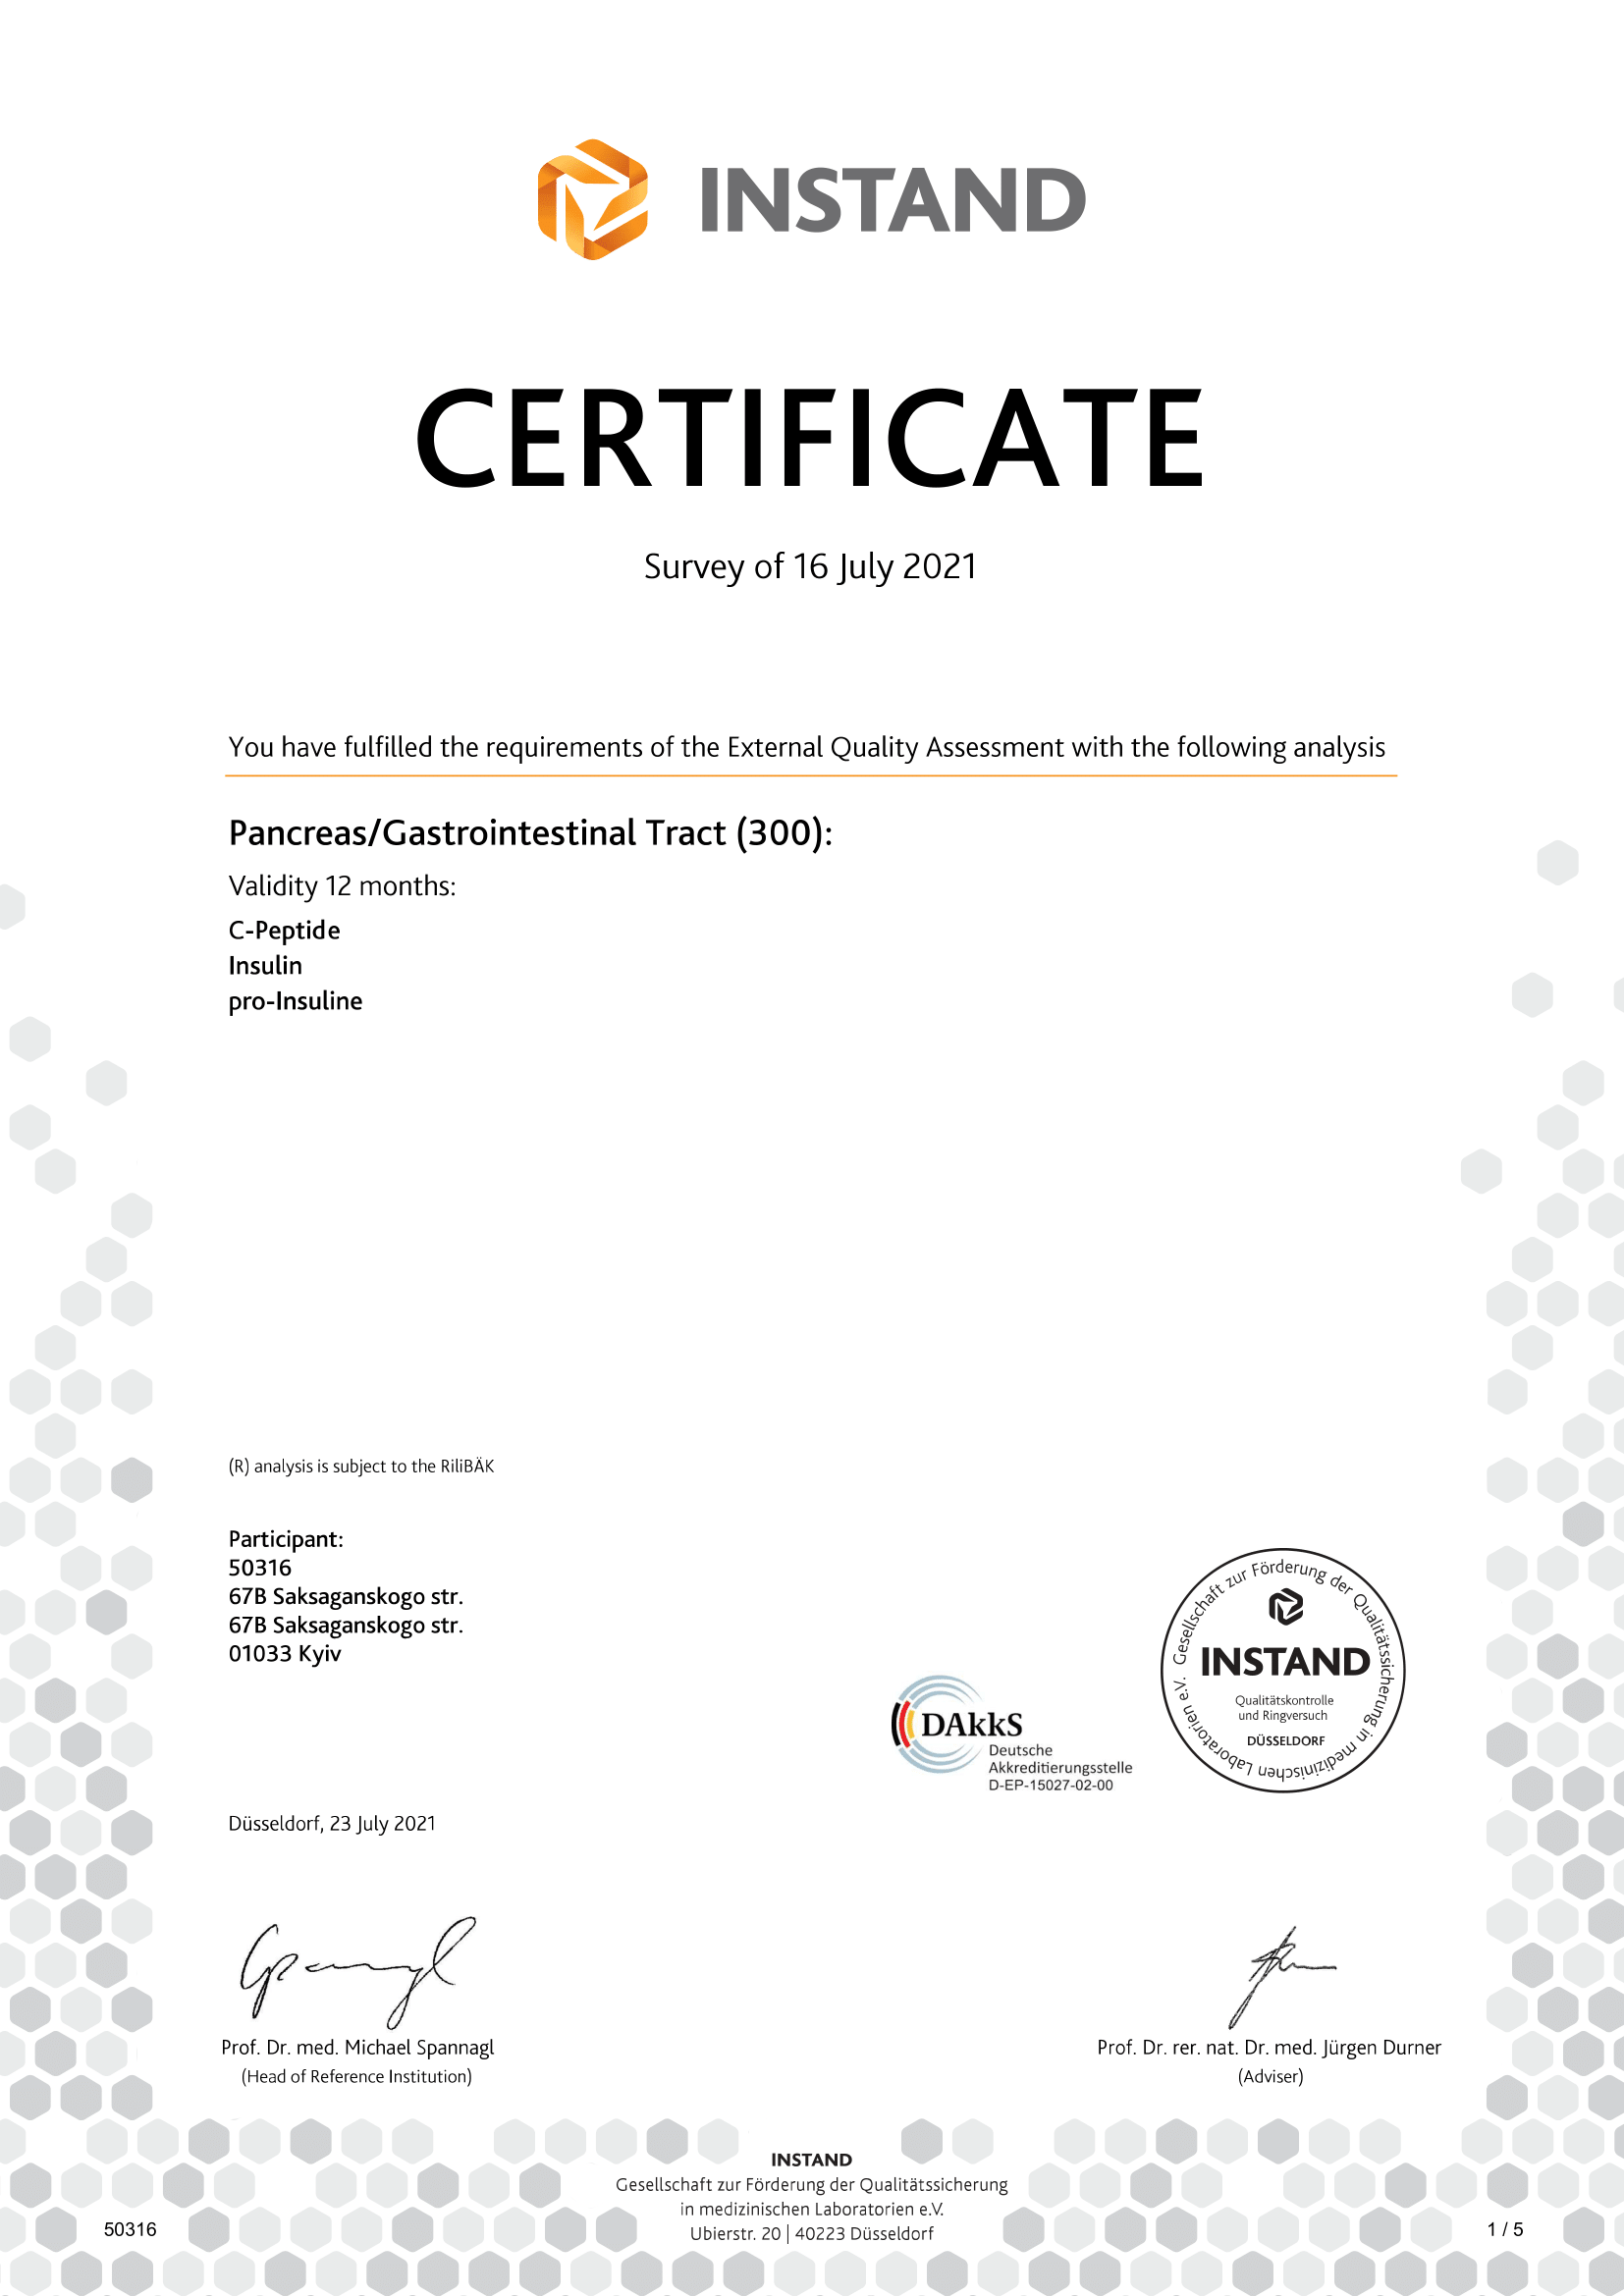 Фото - Сертификат об успешном проходжении внешней оценки качества по системе INSTAND